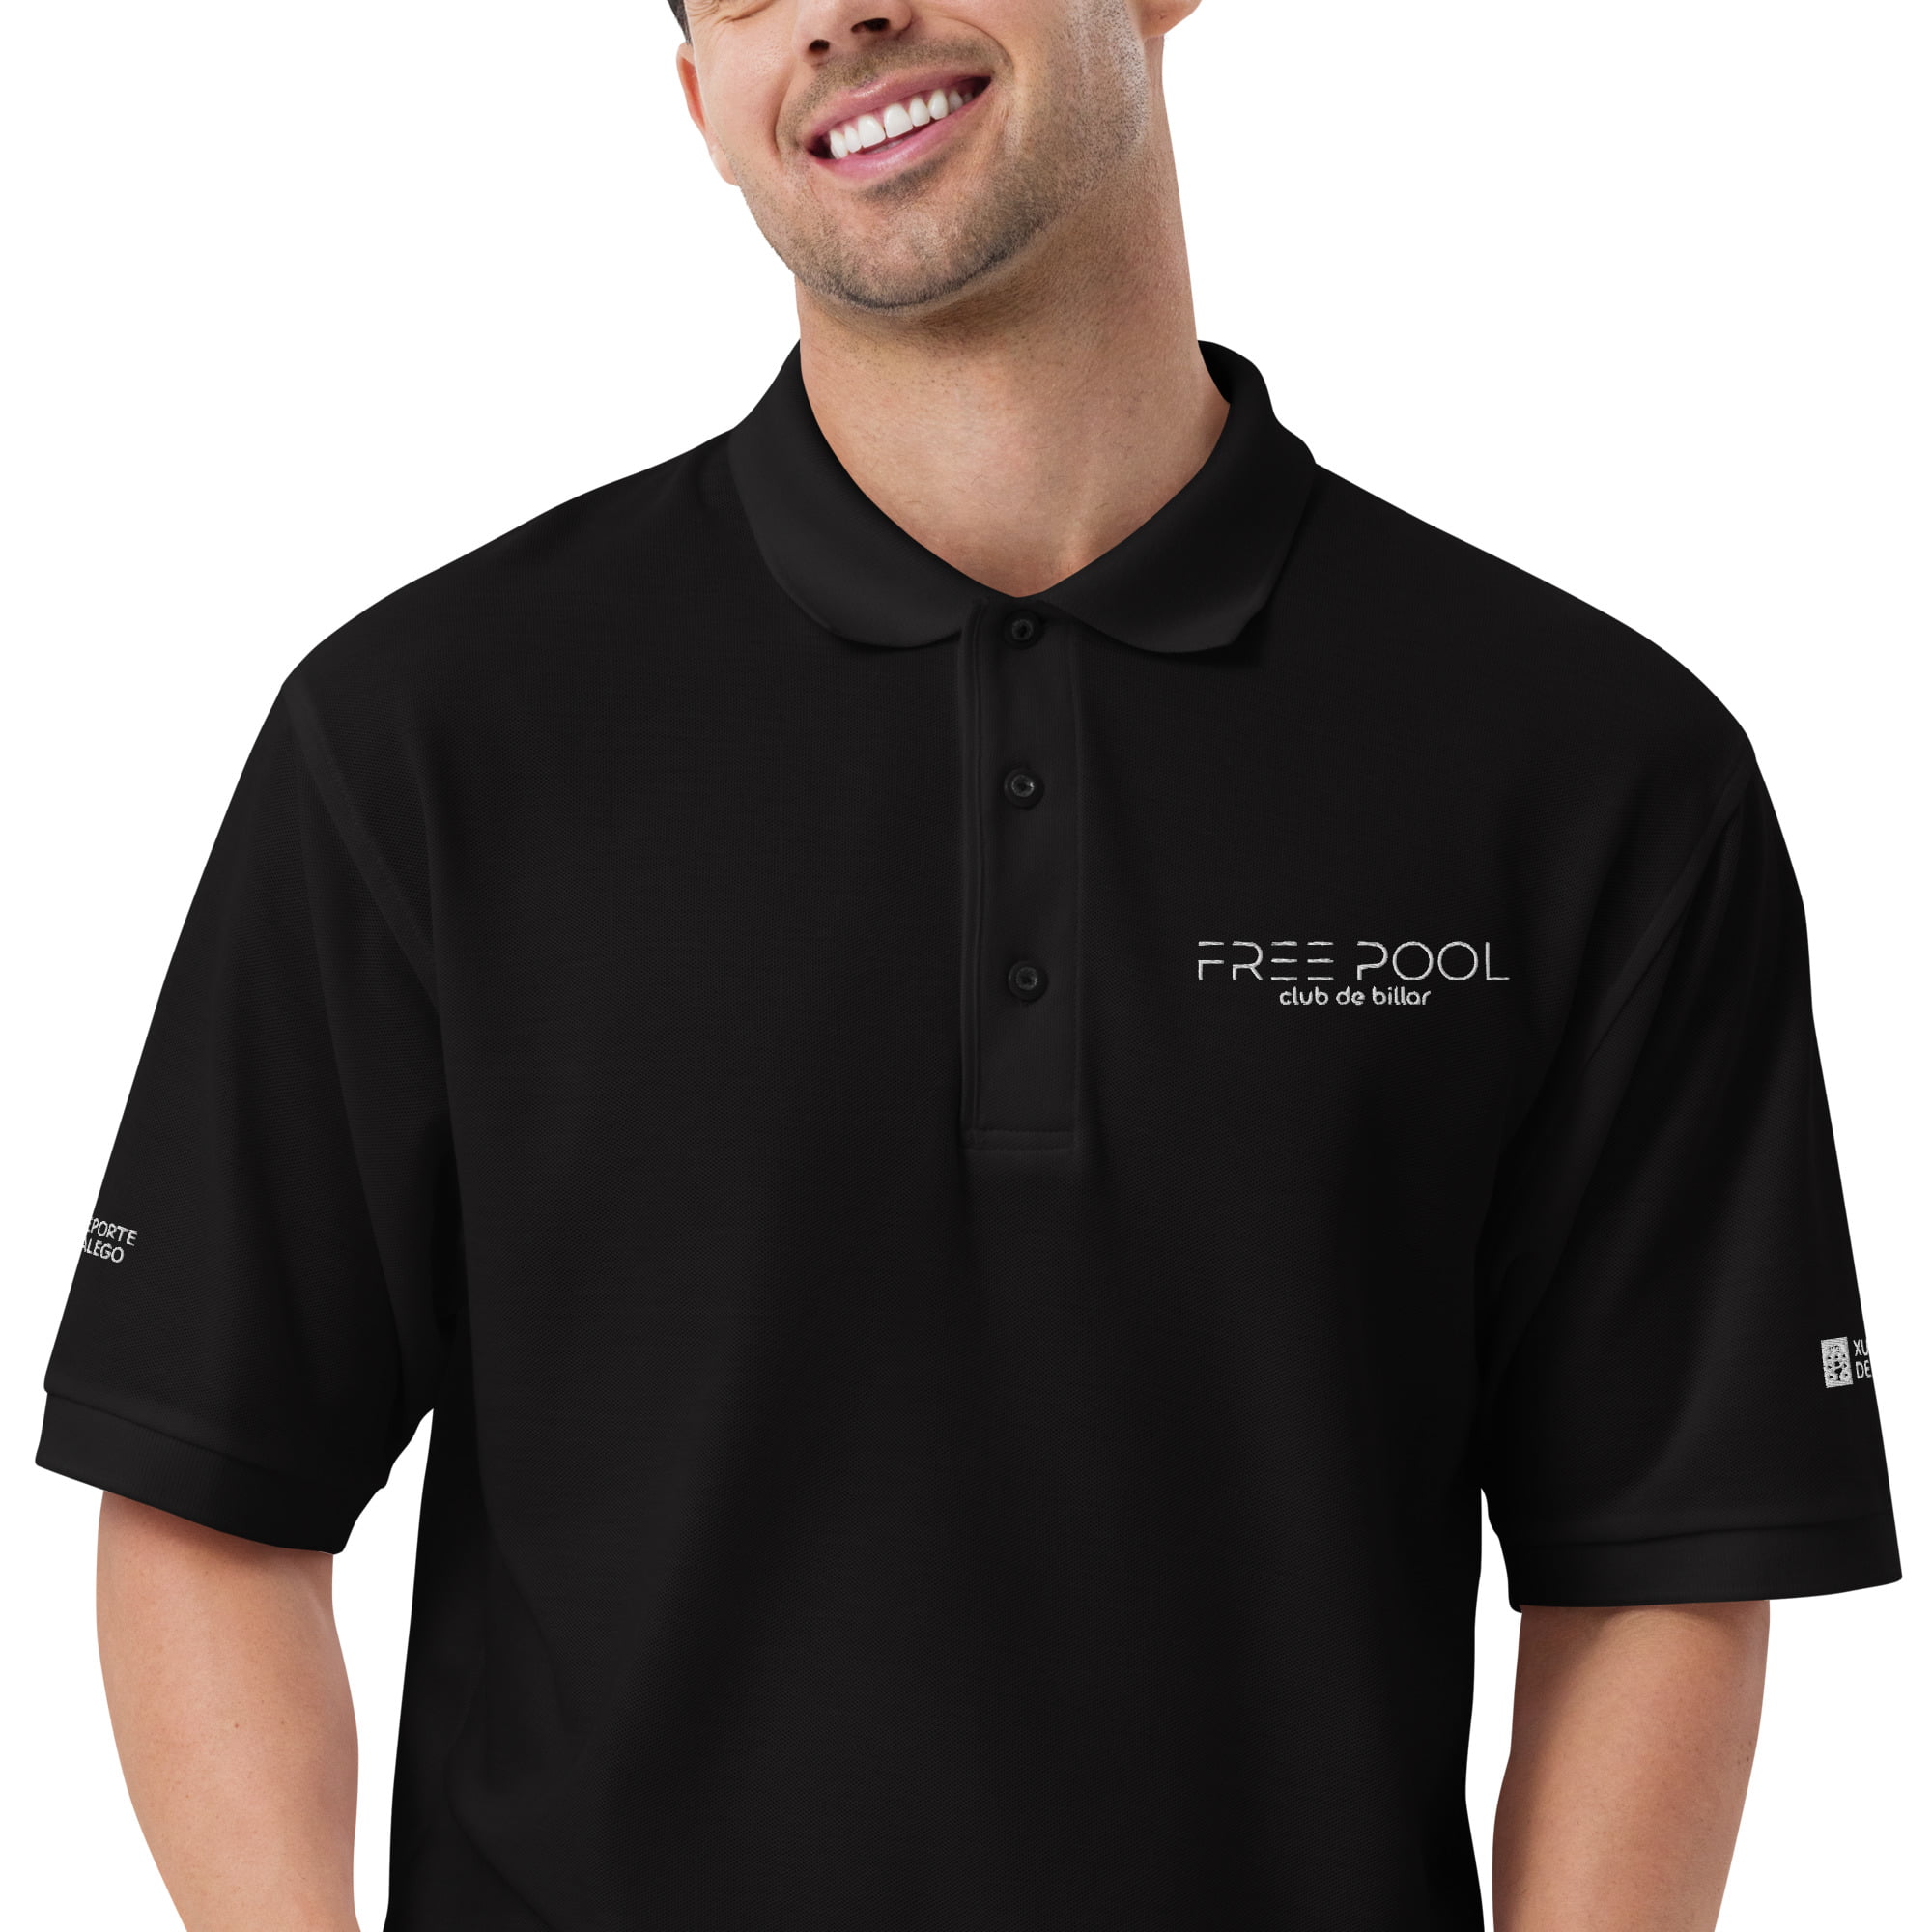 premium-polo-shirt-black-zoomed-in-6486444353d8e.jpg